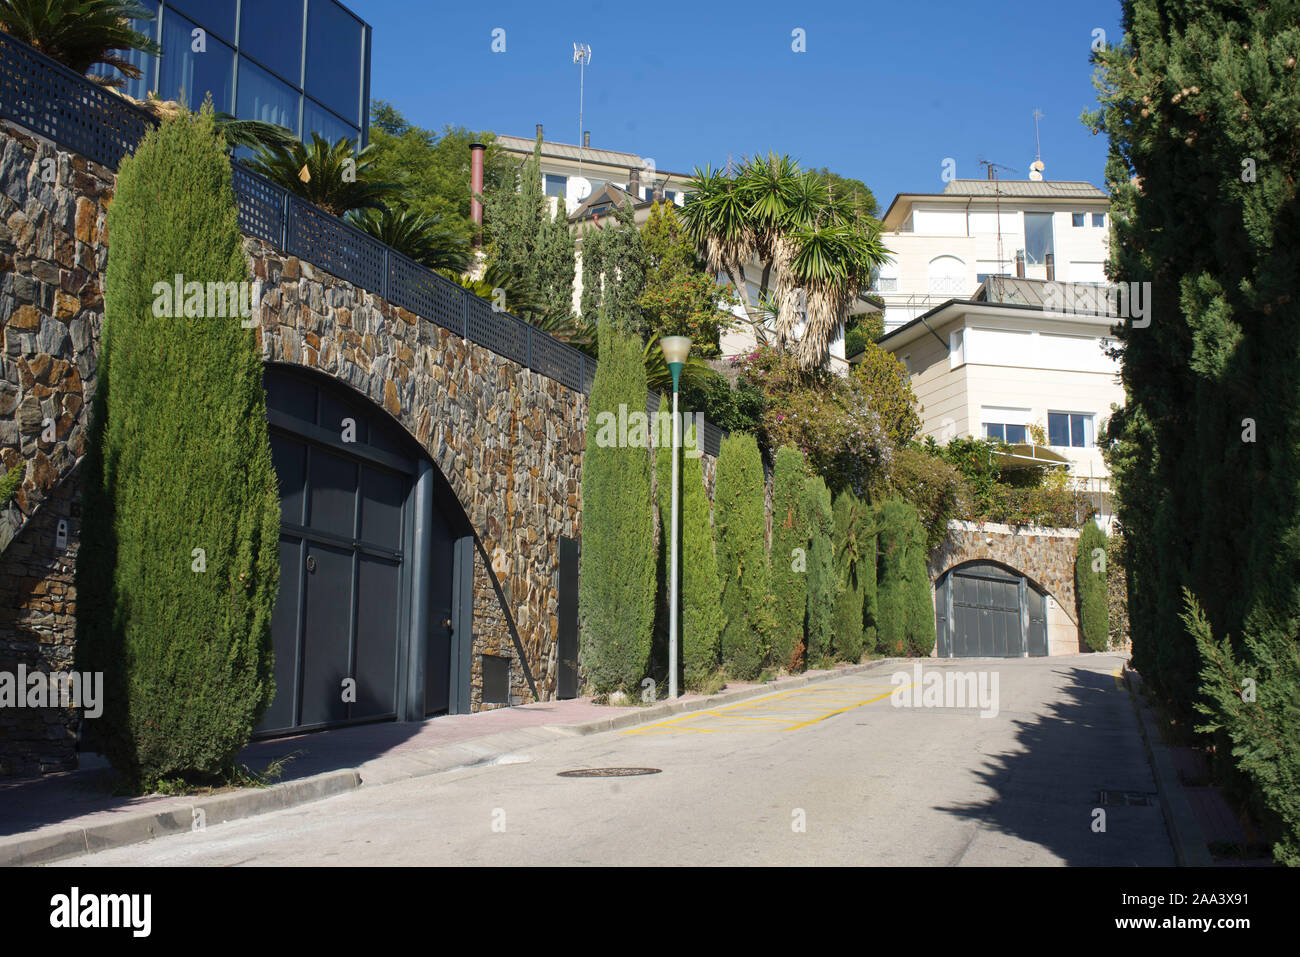 urbanizacion mas rica de barcelona catalunya spain casa de gerard pique Stock Photo